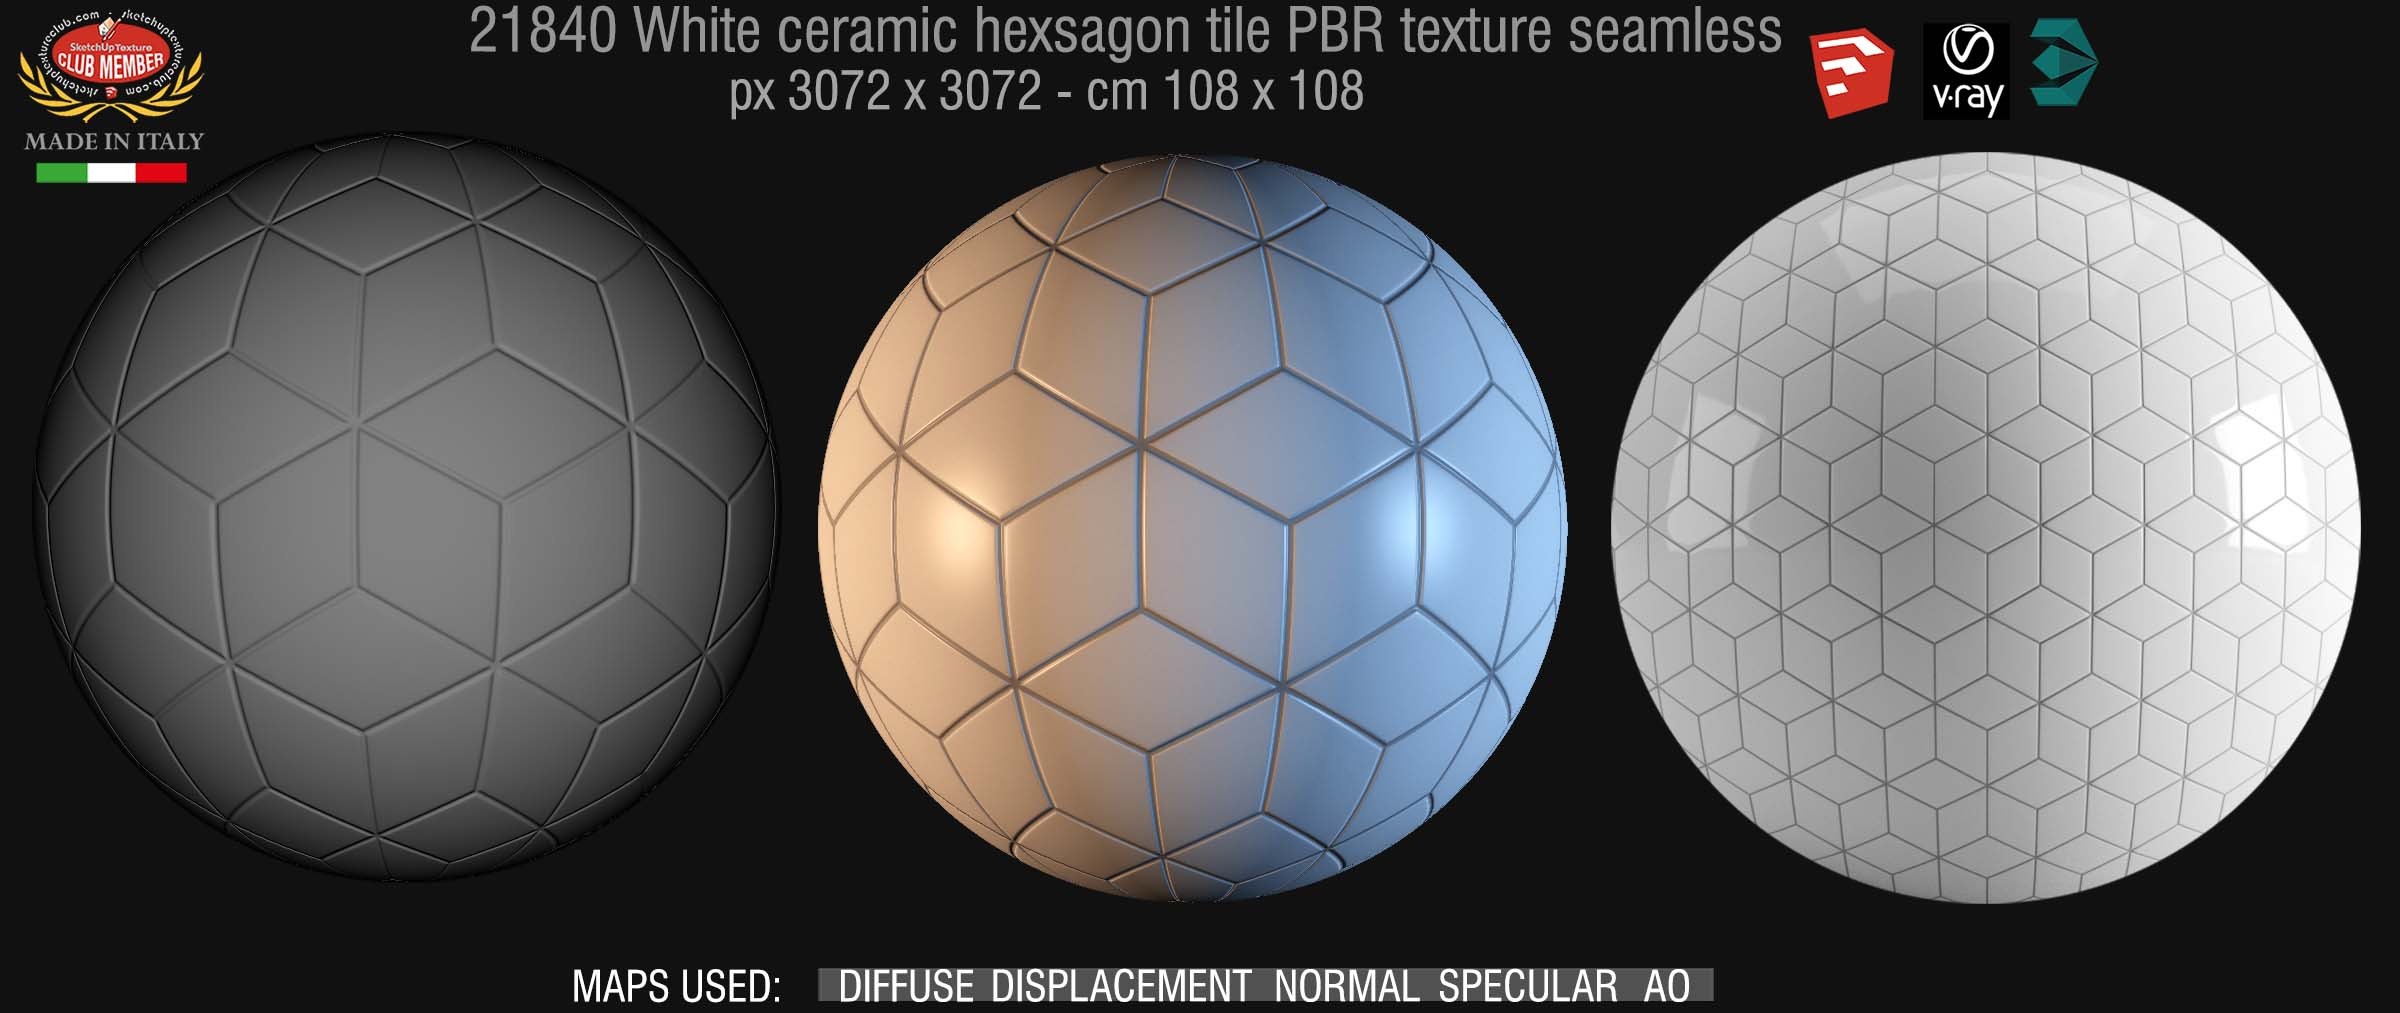 White ceramic hexagon tile PBR texture seamless 21840